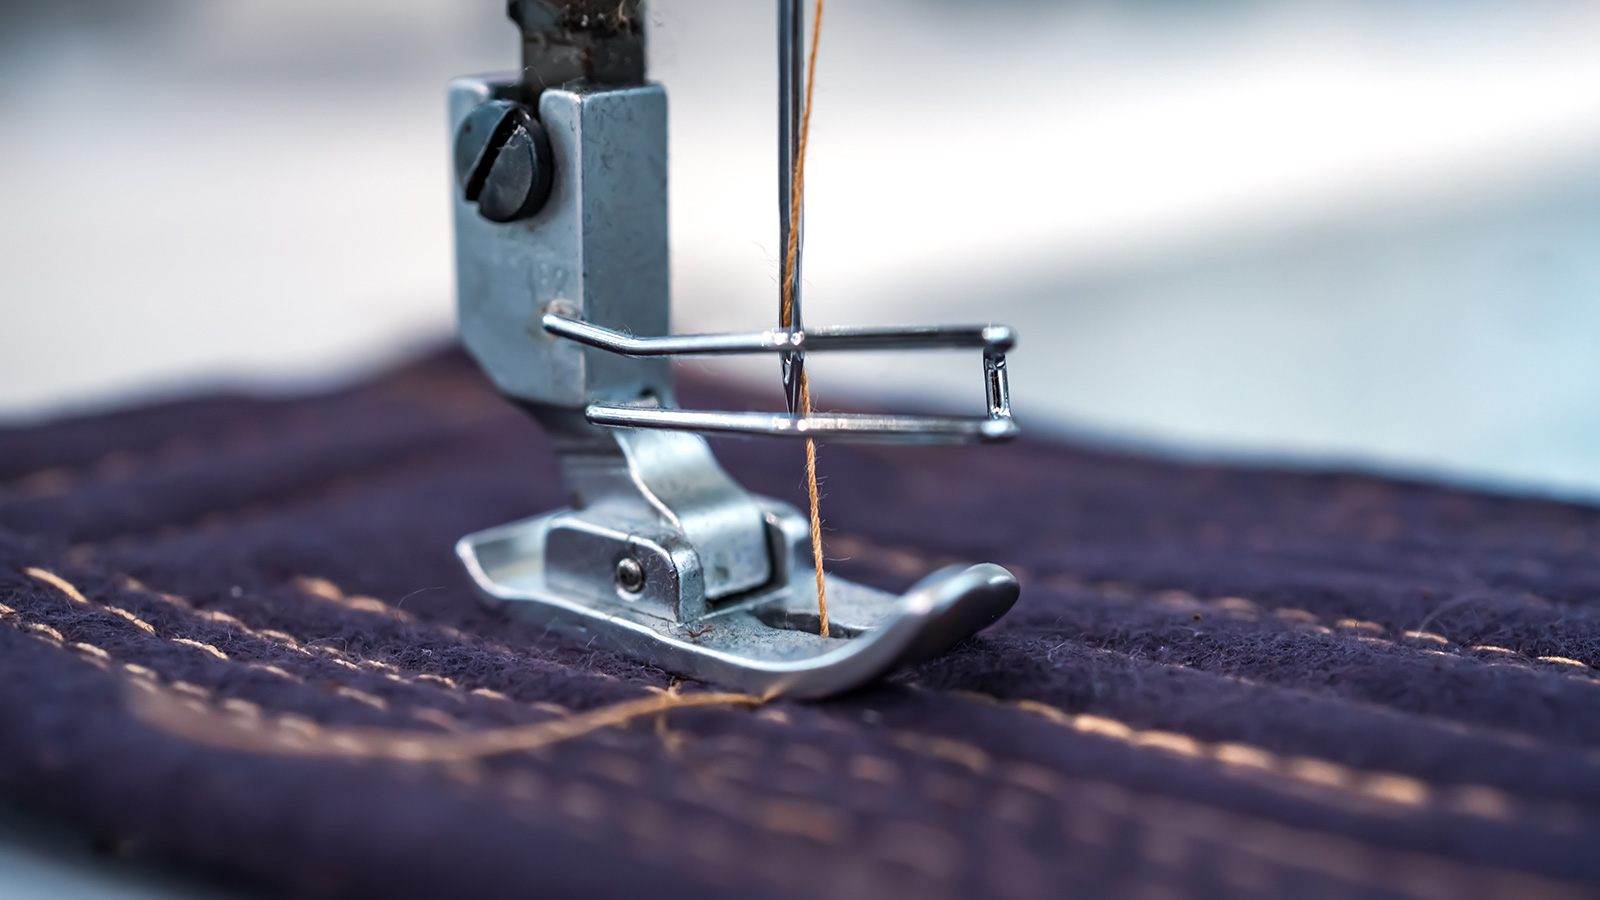 Sewing machine stitching